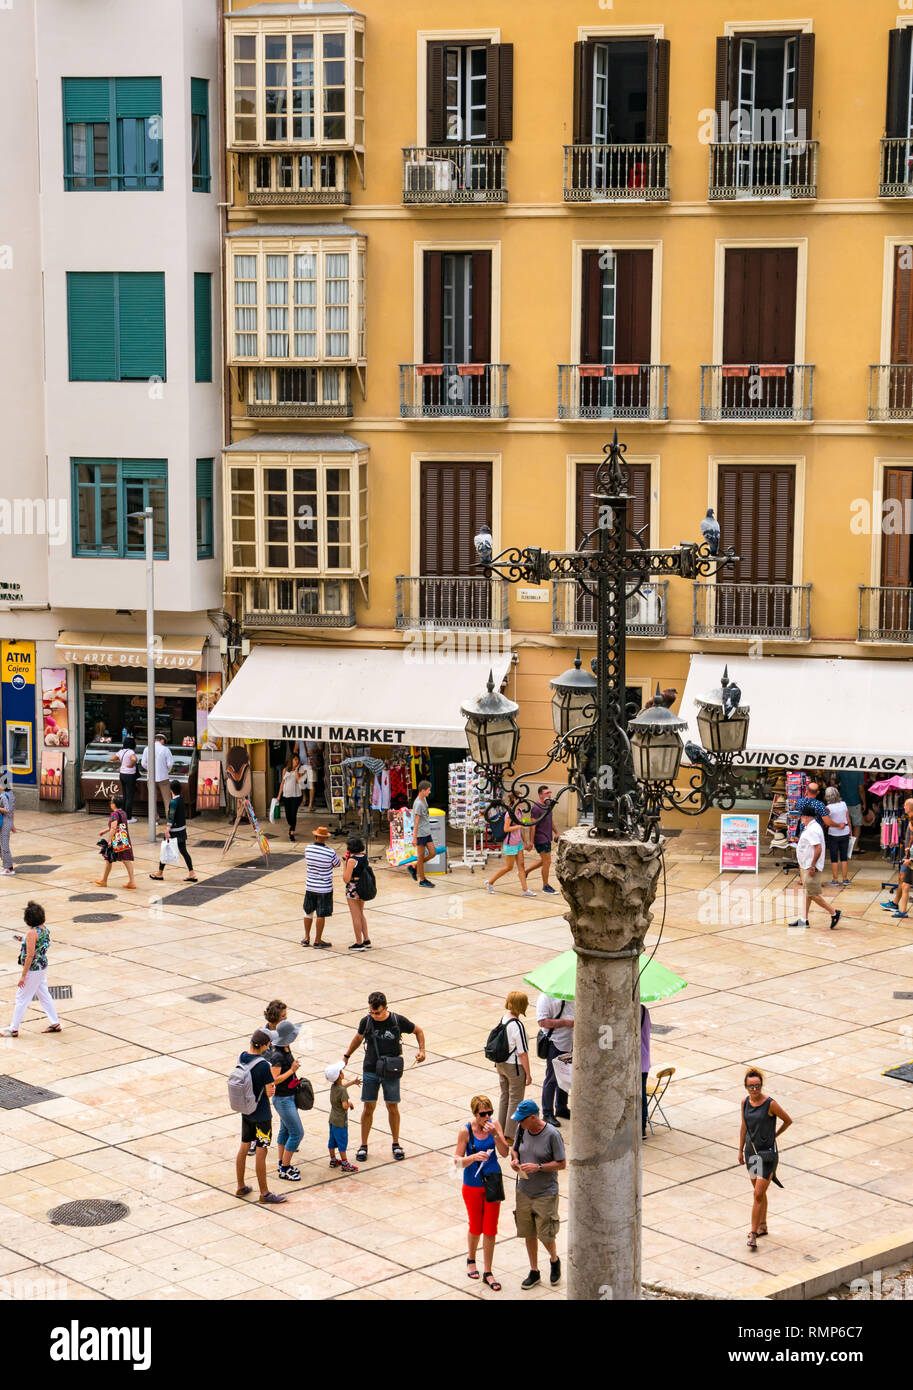 Die alten Bauten und der Fußgängerzone mit Minimarkt Shop und verzierten altmodische Straßenlaterne, Malaga Altstadt, Andalusien, Spanien Stockfoto